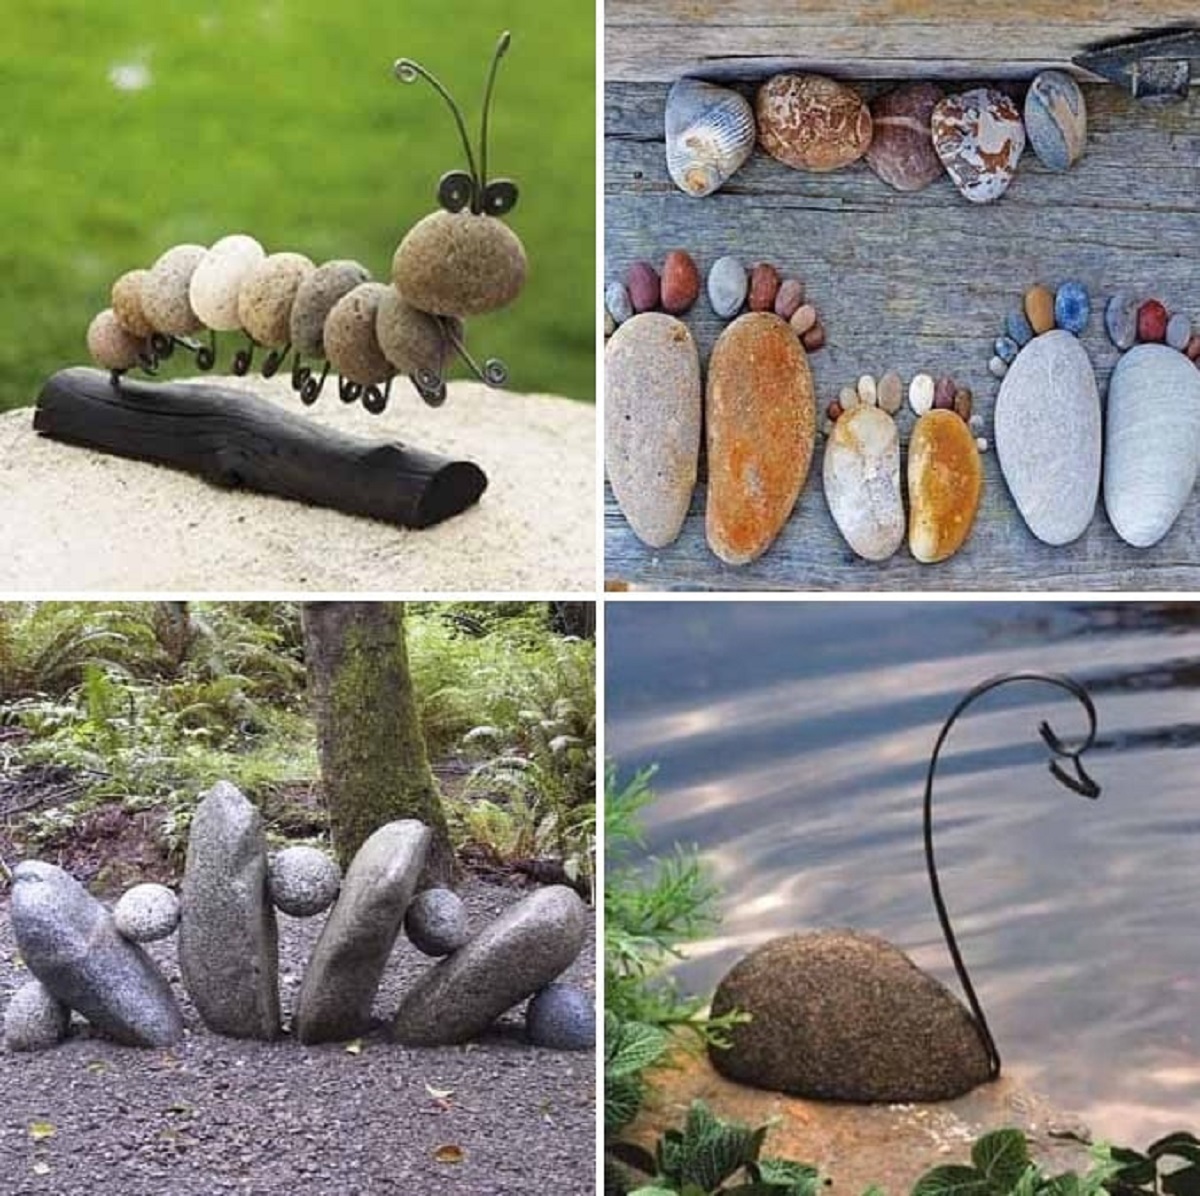 Необычные поделки из камней своими руками - виды камней, советы по работе с материалами, фото подборки